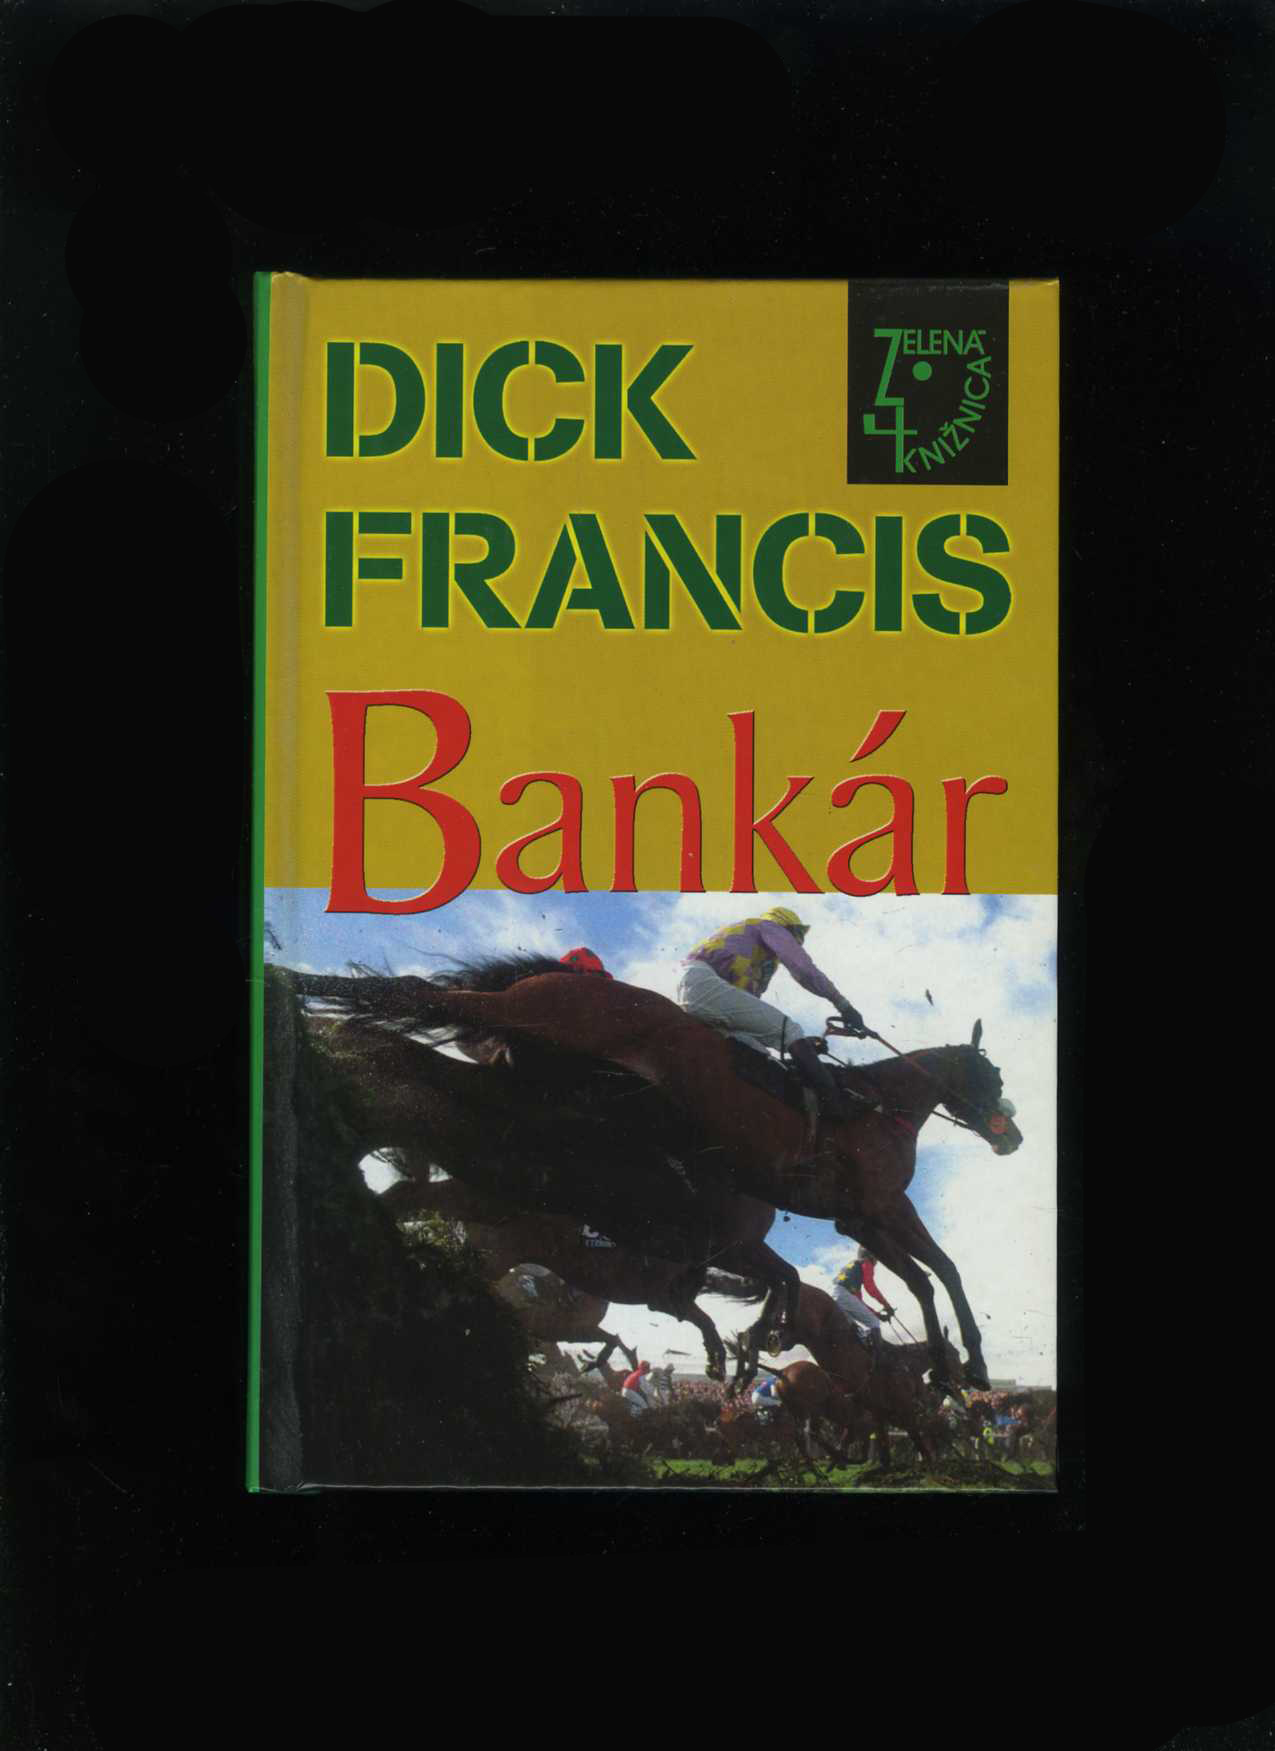 Bankár (Dick Francis)